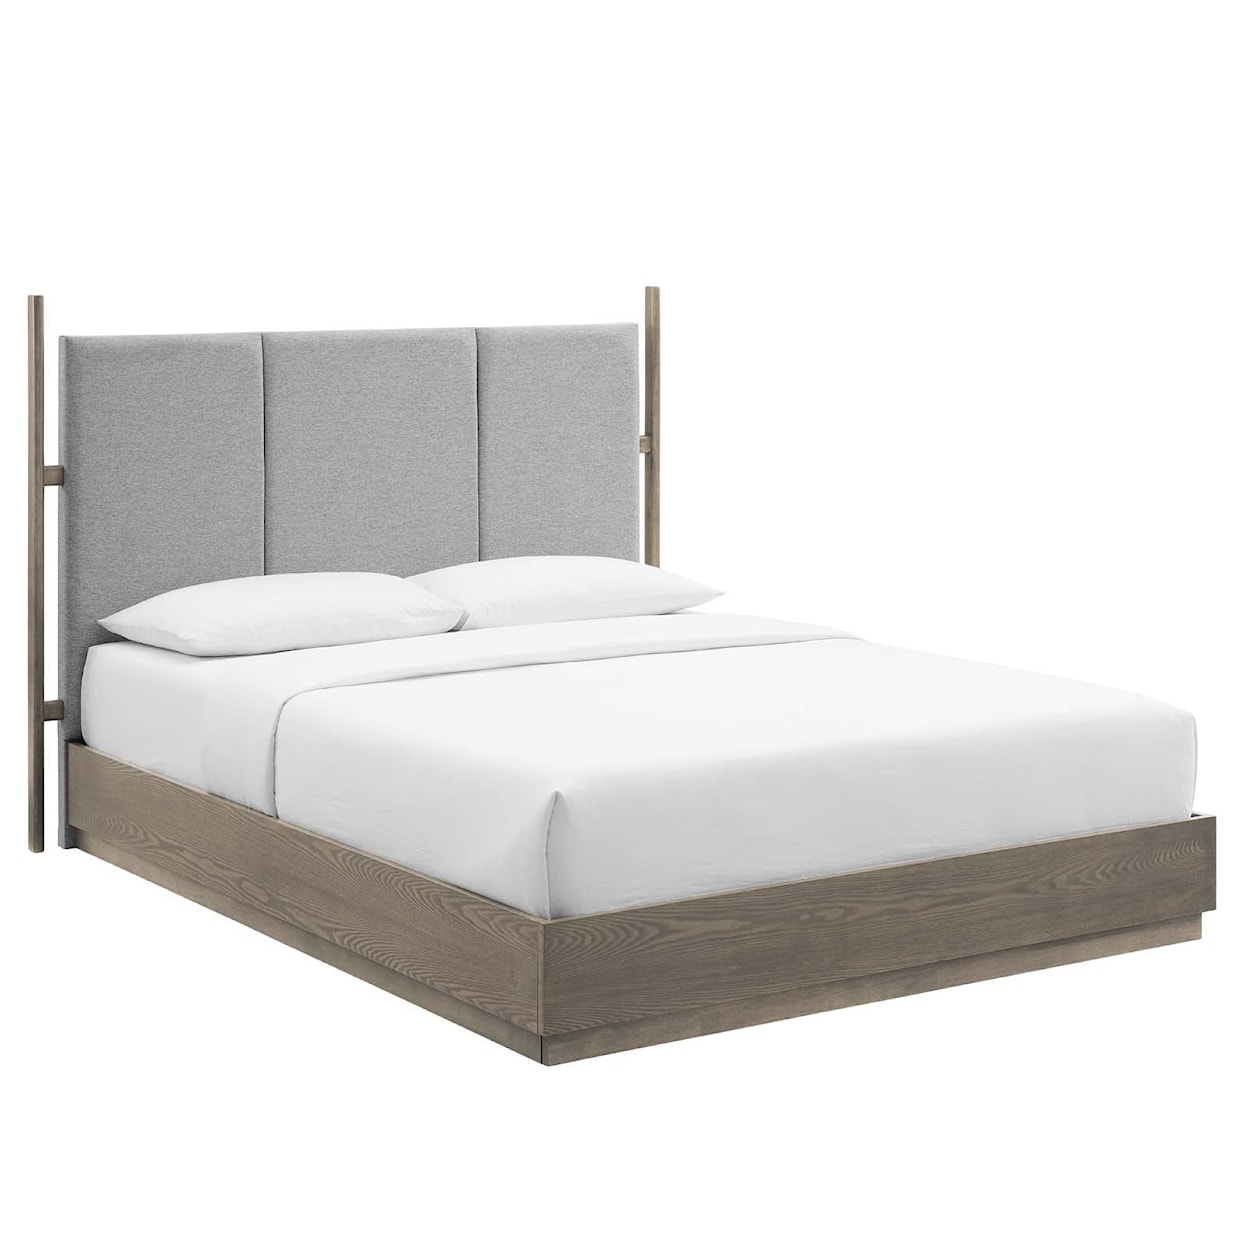 Modway Merritt Merritt 3 Piece Upholstered Bedroom Set